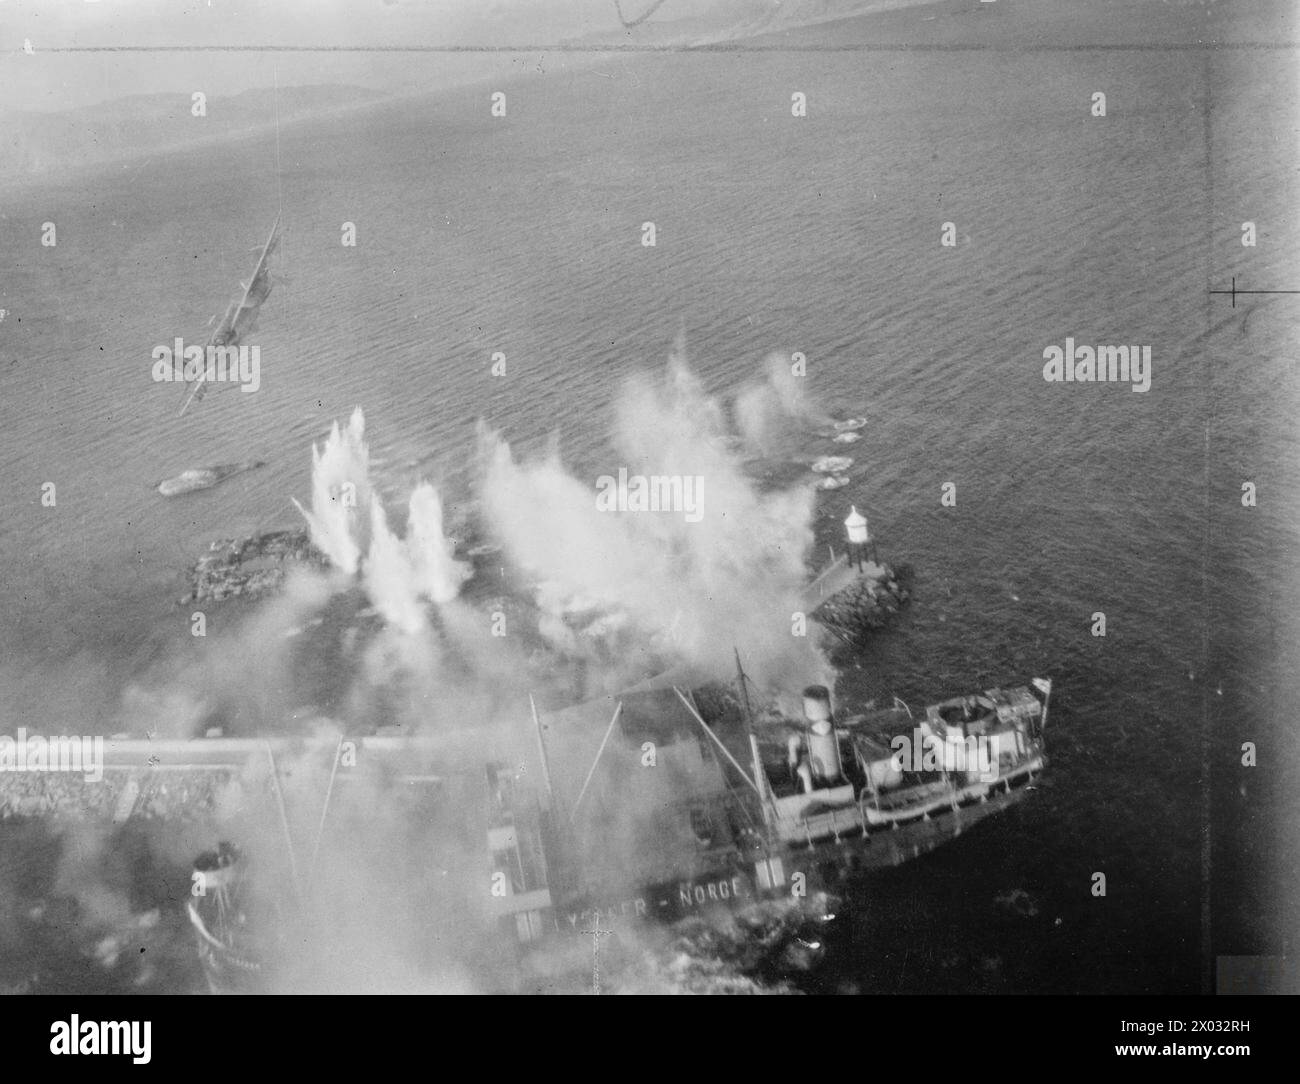 ROYAL AIR FORCE COASTAL COMMAND, 1939-1945. - Un de Havilland Mosquito FB Mark VI, survole le navire norvégien sous contrôle allemand LYSAKER, après l'avoir attaqué avec des projectiles de roquettes dans le petit port de Tetgenaes près de Standlandet dans le Dalsfjord, en Norvège. 12 moustiques de l'aile Banff Strike ont été impliqués dans l'attaque qui a laissé un grand navire marchand allemand en feu et le LYSAKER sérieusement endommagé la Royal Air Force, 18 Group, marine marchande allemande Banque D'Images